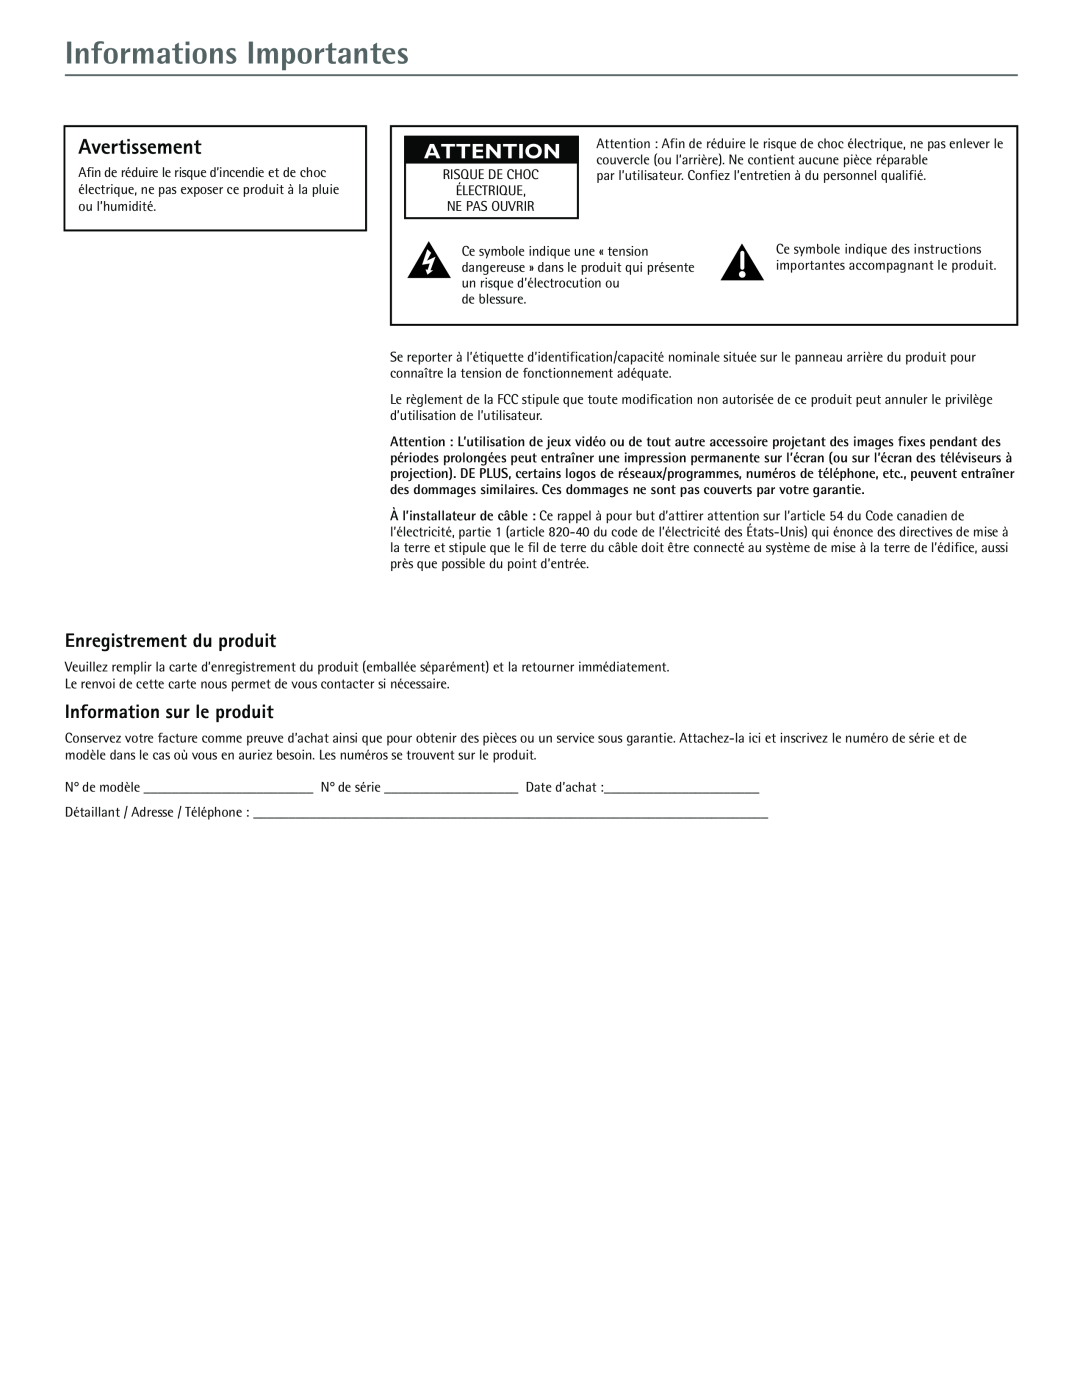 RCA J20542 manual Informations Importantes, Avertissement, Enregistrement du produit, Information sur le produit 